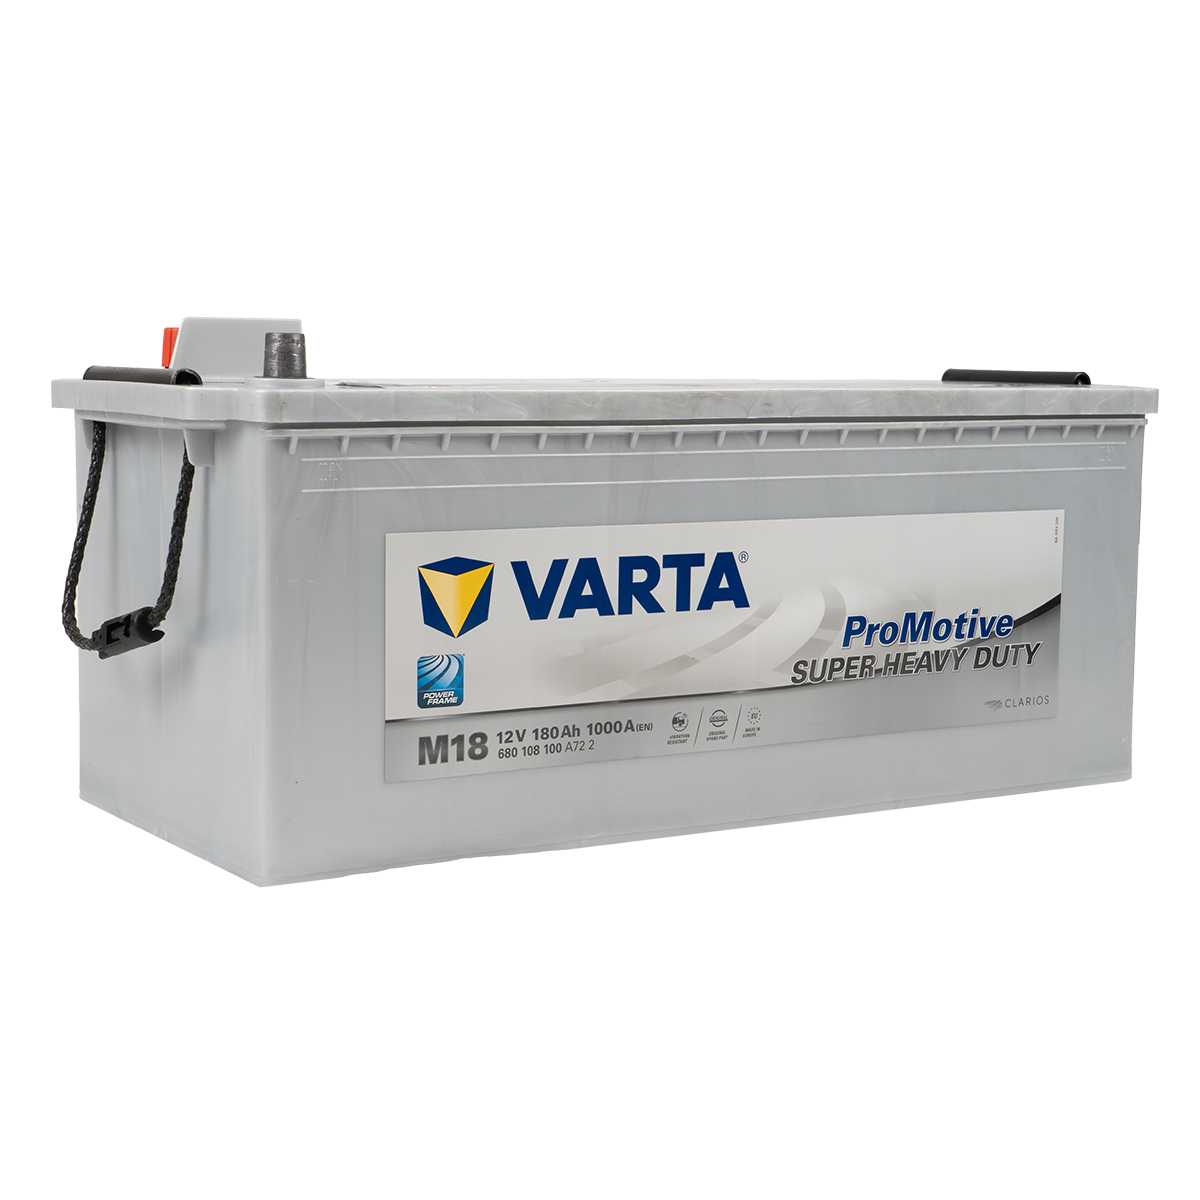 VARTA H17 ProMotive Heavy Duty 12V 105Ah 800A LKW-Batterie 605 102 080, Starterbatterie, Caravan, Kfz, Batterien für